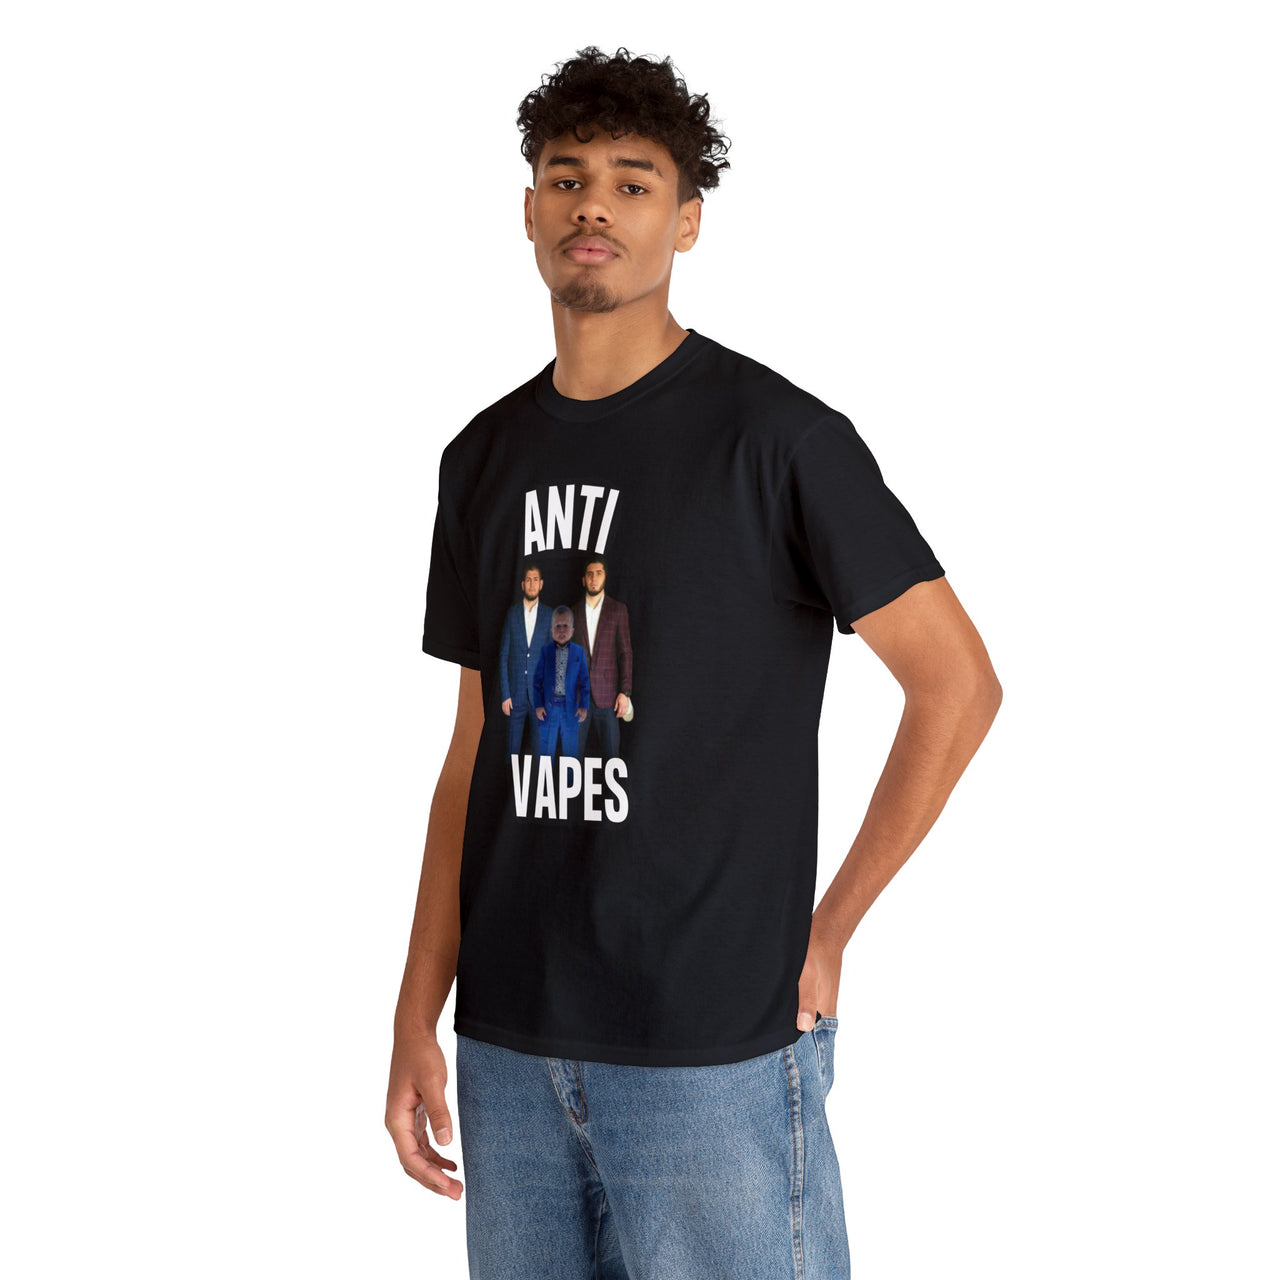 Anti Vapes T-shirt